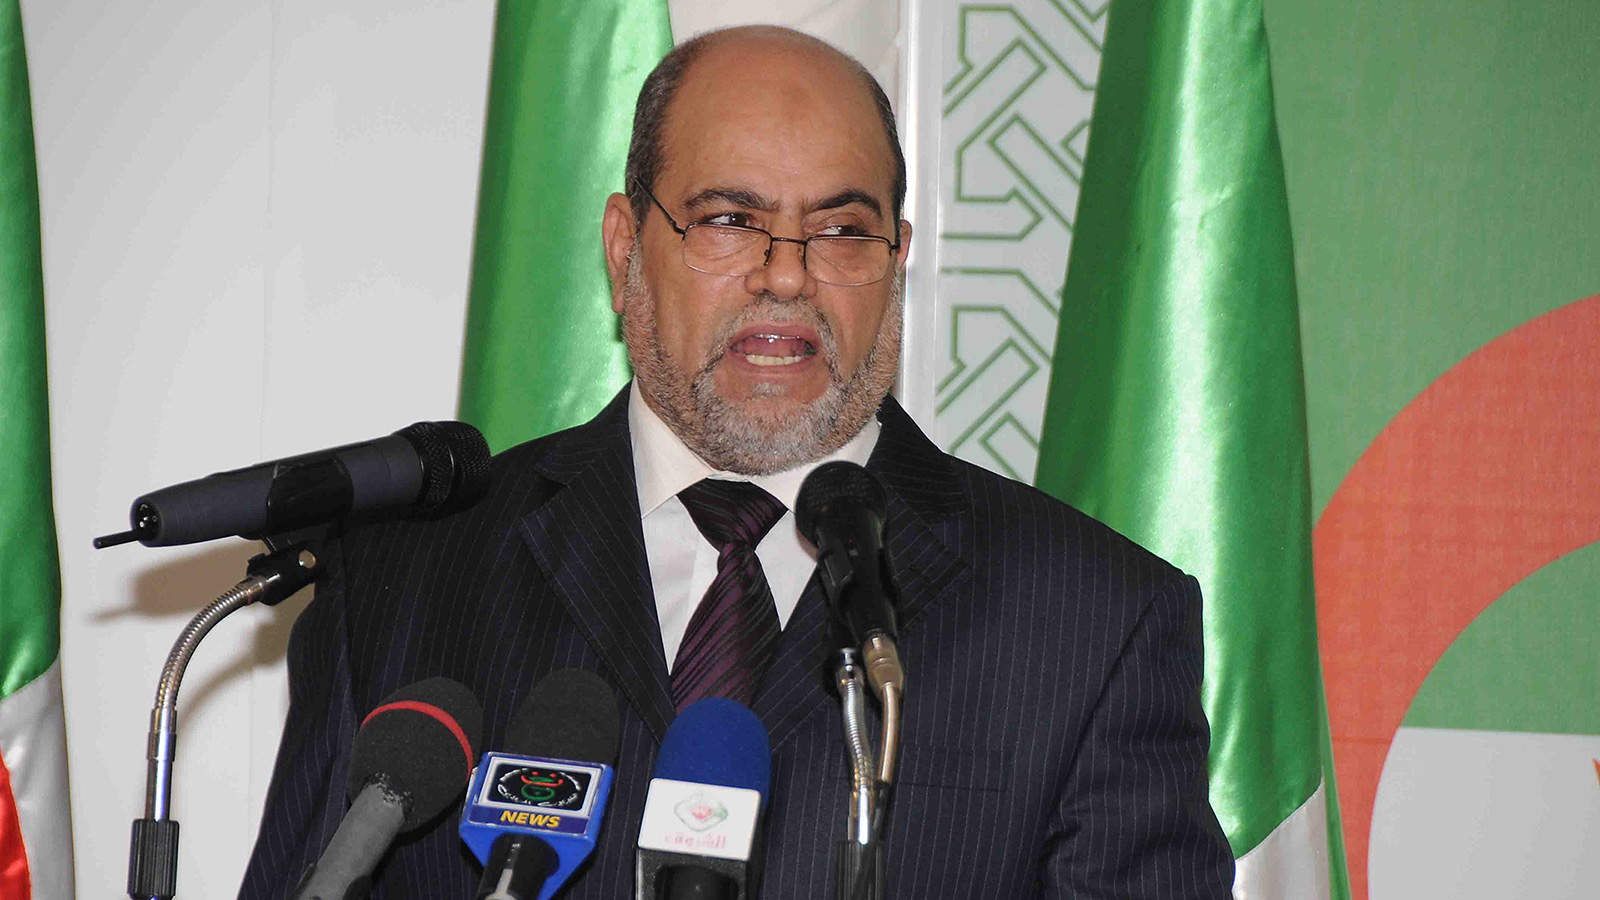 ‪أبو جرة سلطاني: لا مستقبل لليسار في الجزائر إلا في ظل مواطنة كاملة على قاعدة الأغلبية والأقلية‬ (الجزيرة نت)